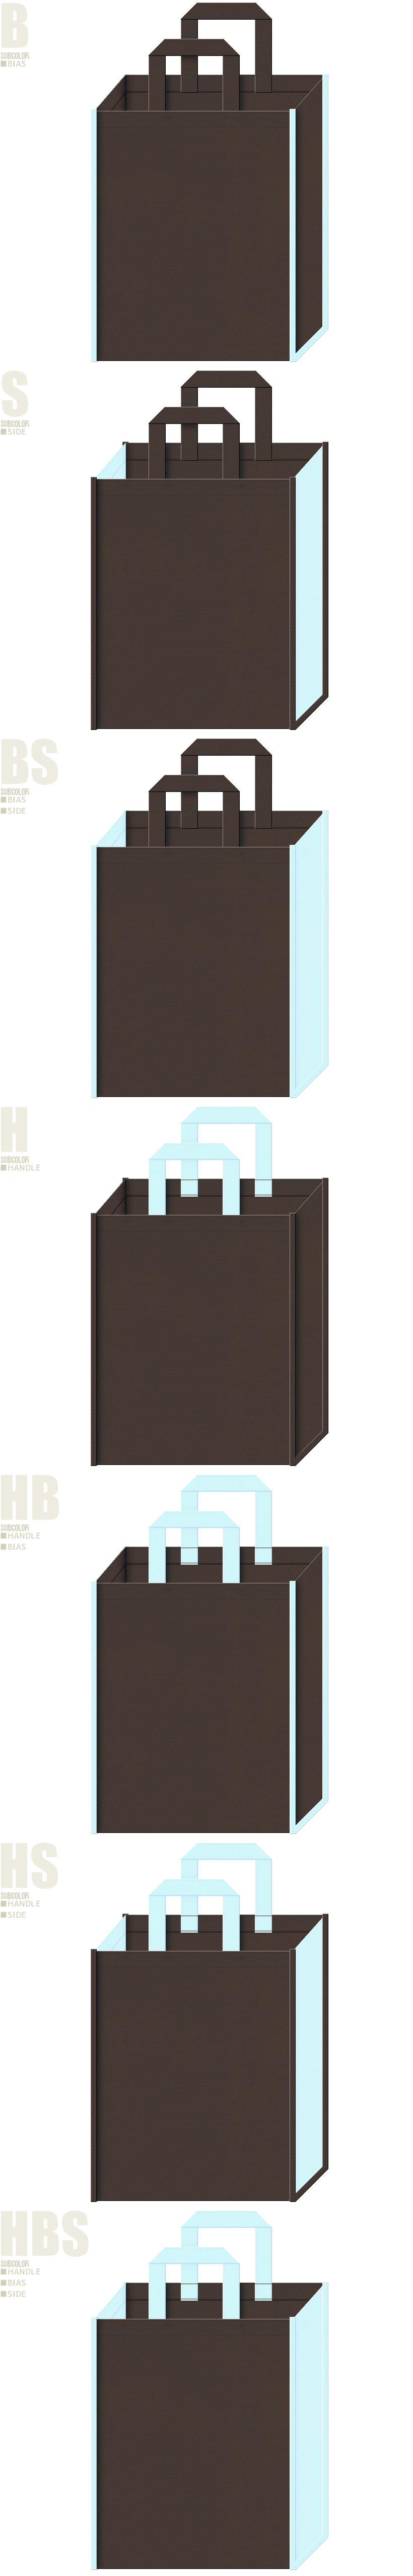 こげ茶色と水色の不織布バッグ：7パターン